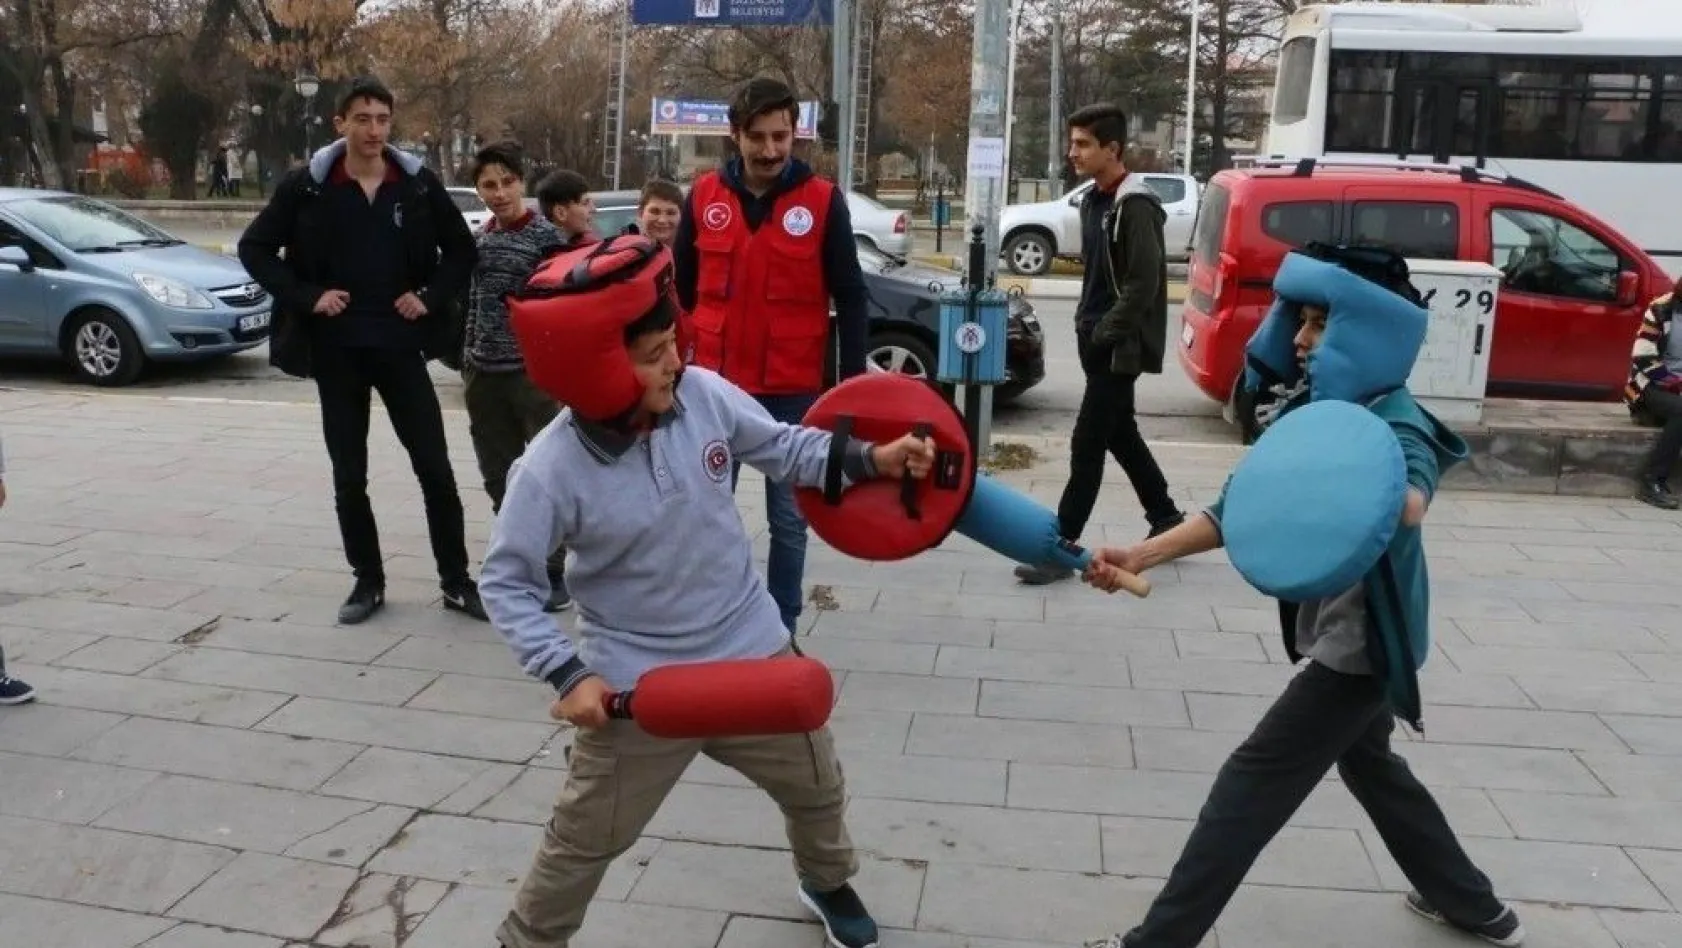 Erzincan Mobil Gençlik Merkezi gençler için yollarda
